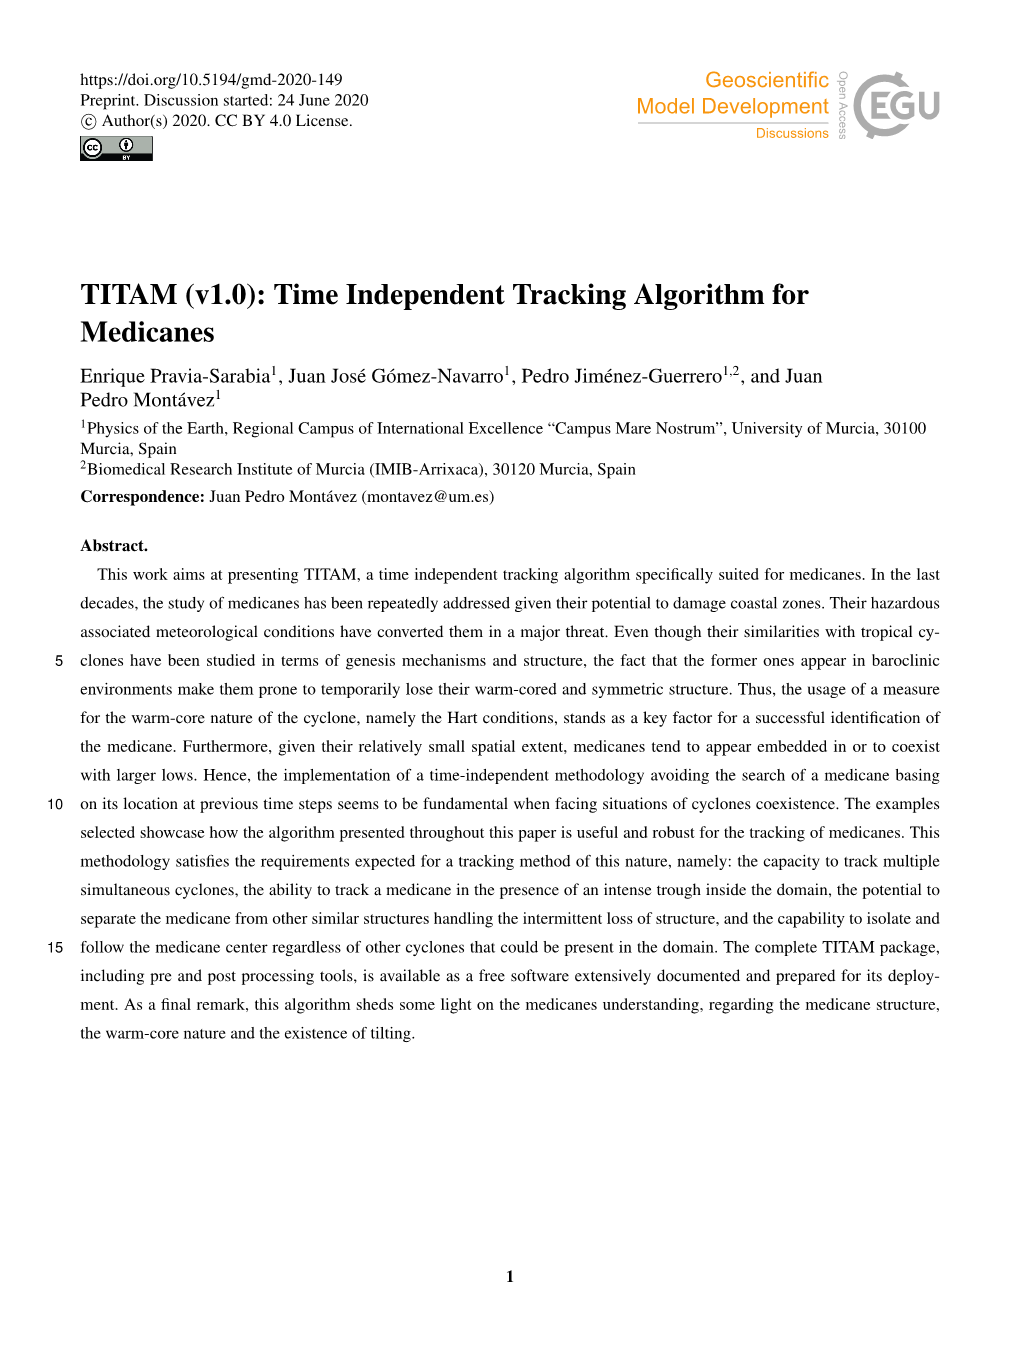 TITAM (V1.0): Time Independent Tracking Algorithm for Medicanes